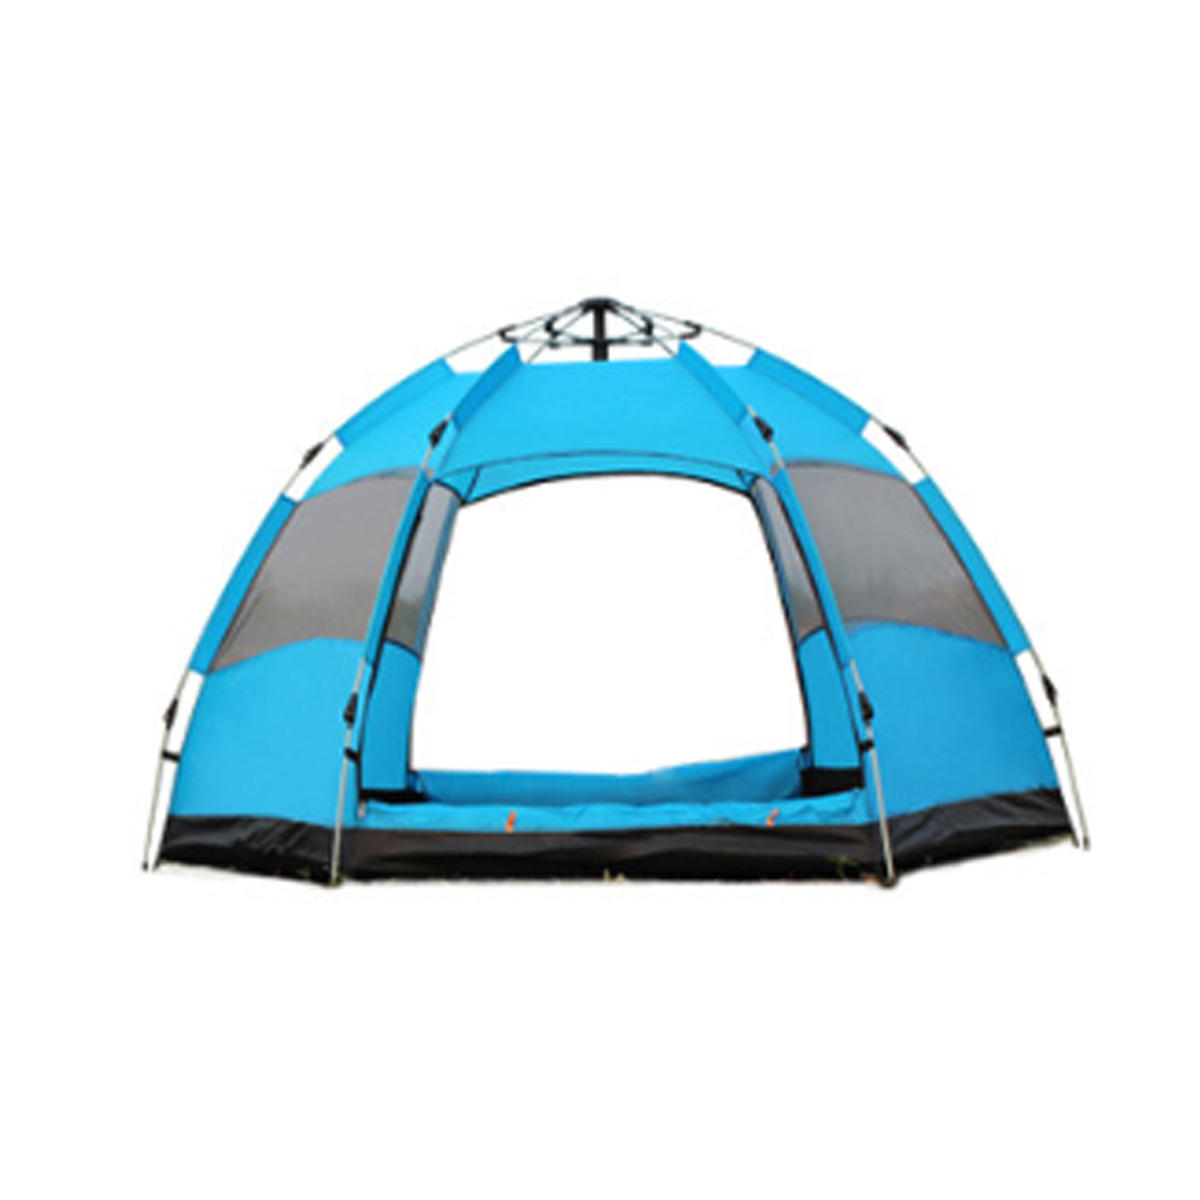 Volautomatische tent voor 3-5 personen, waterdicht, snel openend, ideaal voor familiecamping, wandelen, vissen, zonnescherm - oranje / groen / blauw.